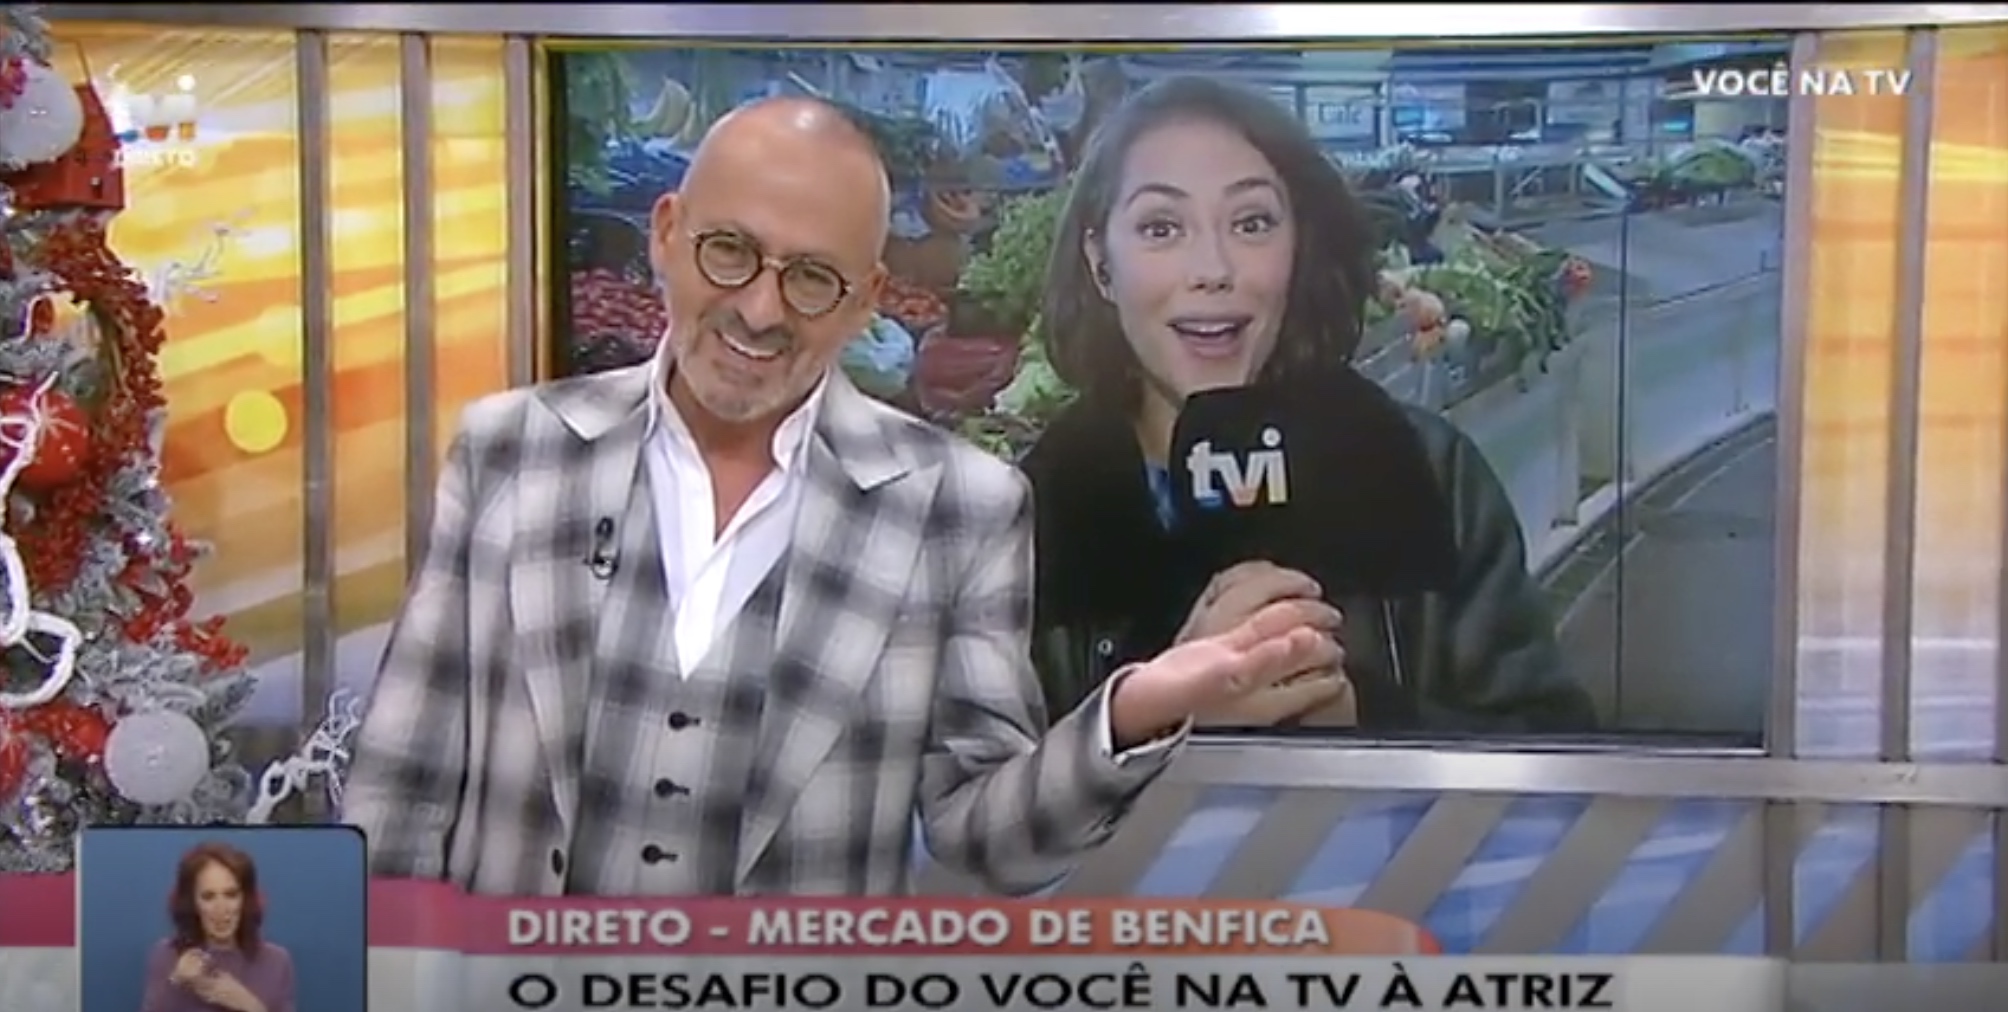 Manuel Luis Goucha Sofia Ribeiro Voce Na Tv Goucha Contrata Em Direto A Nova Repórter Do 'Você Na Tv'